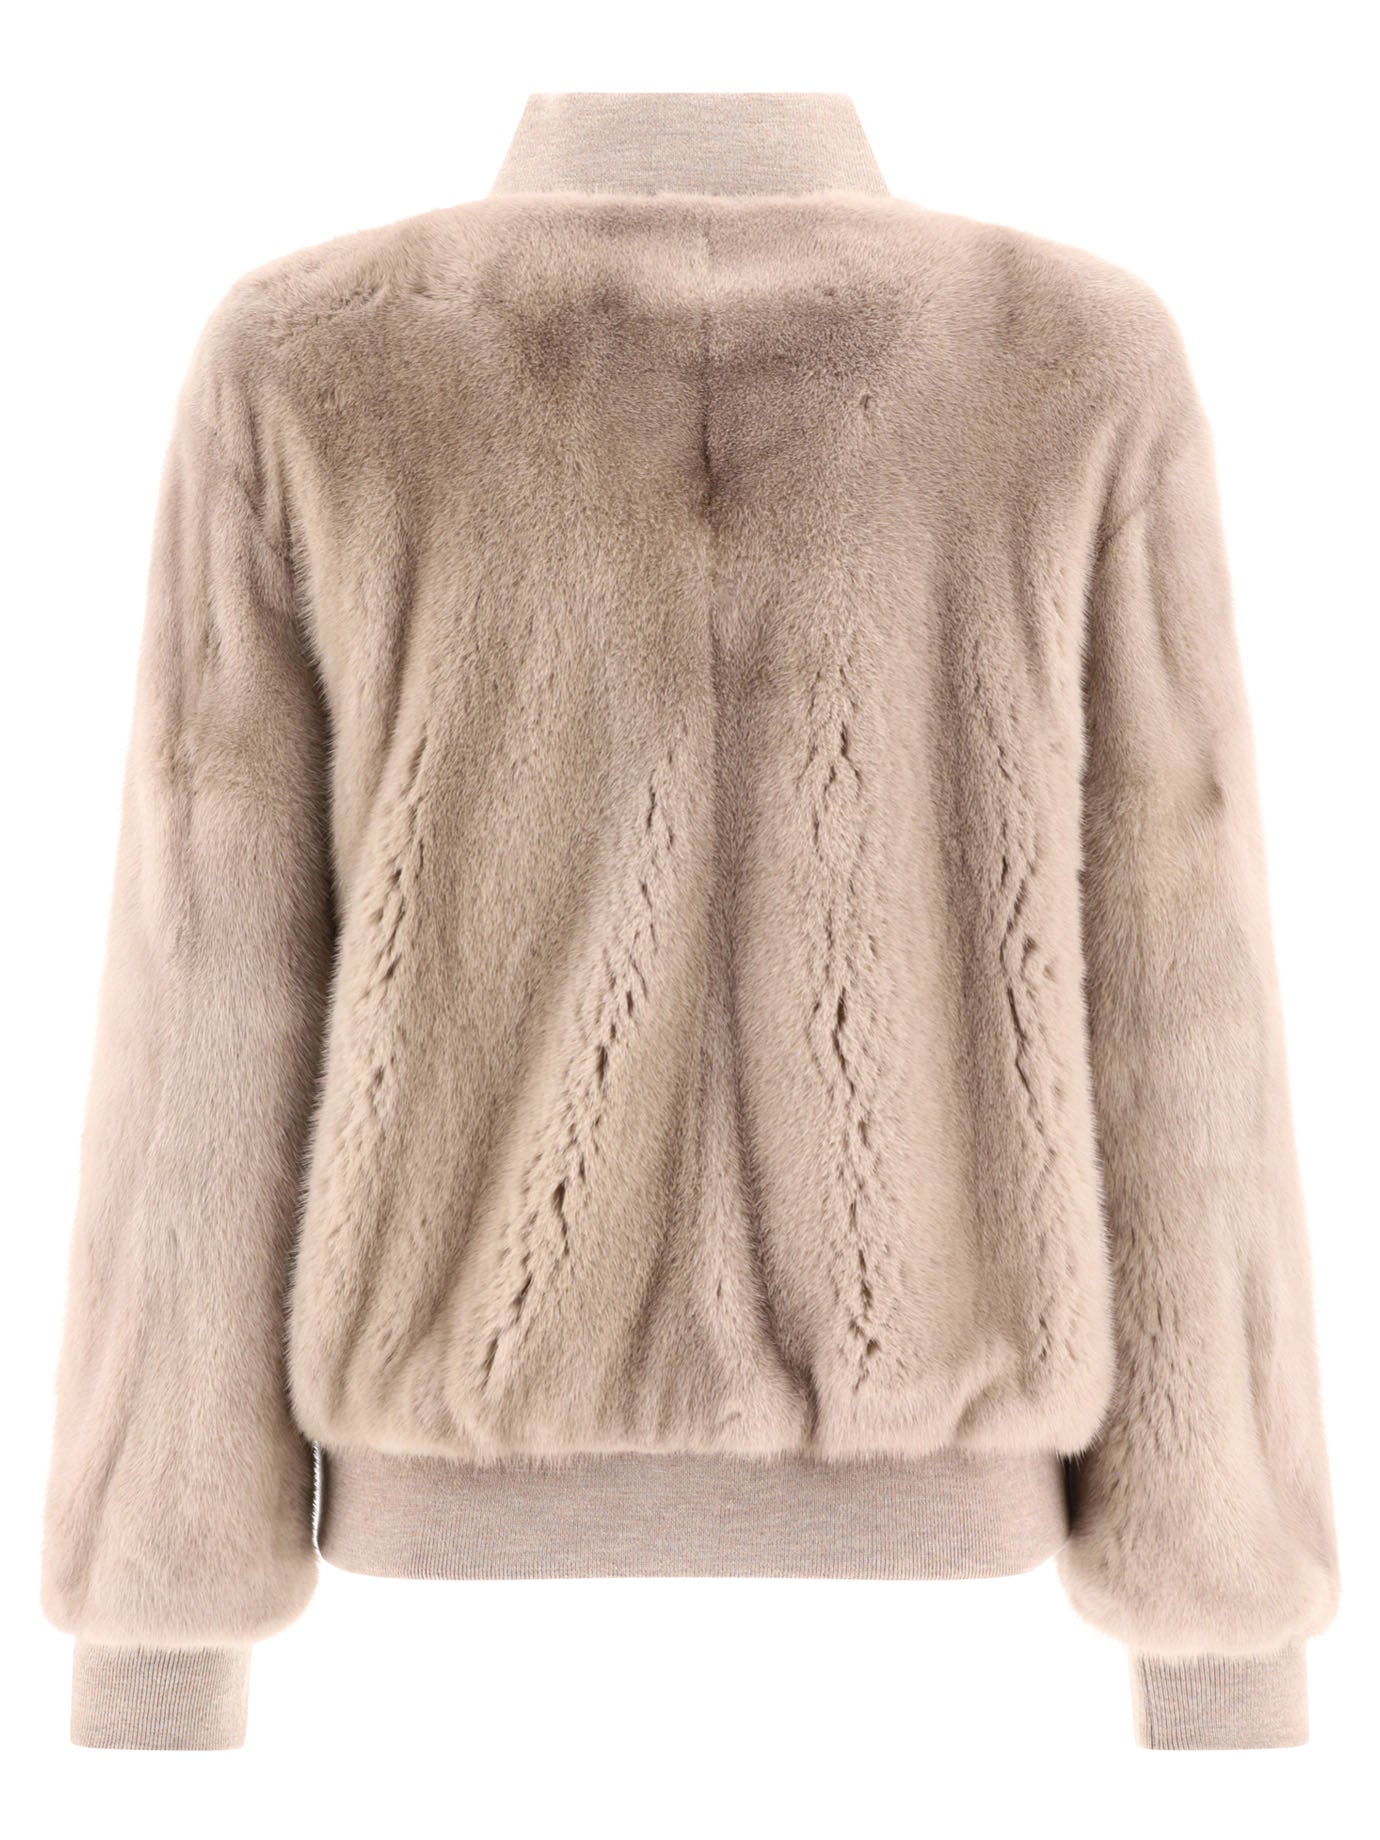 Shop Giovi Beige Mink Fur Bomber Jacket For Women